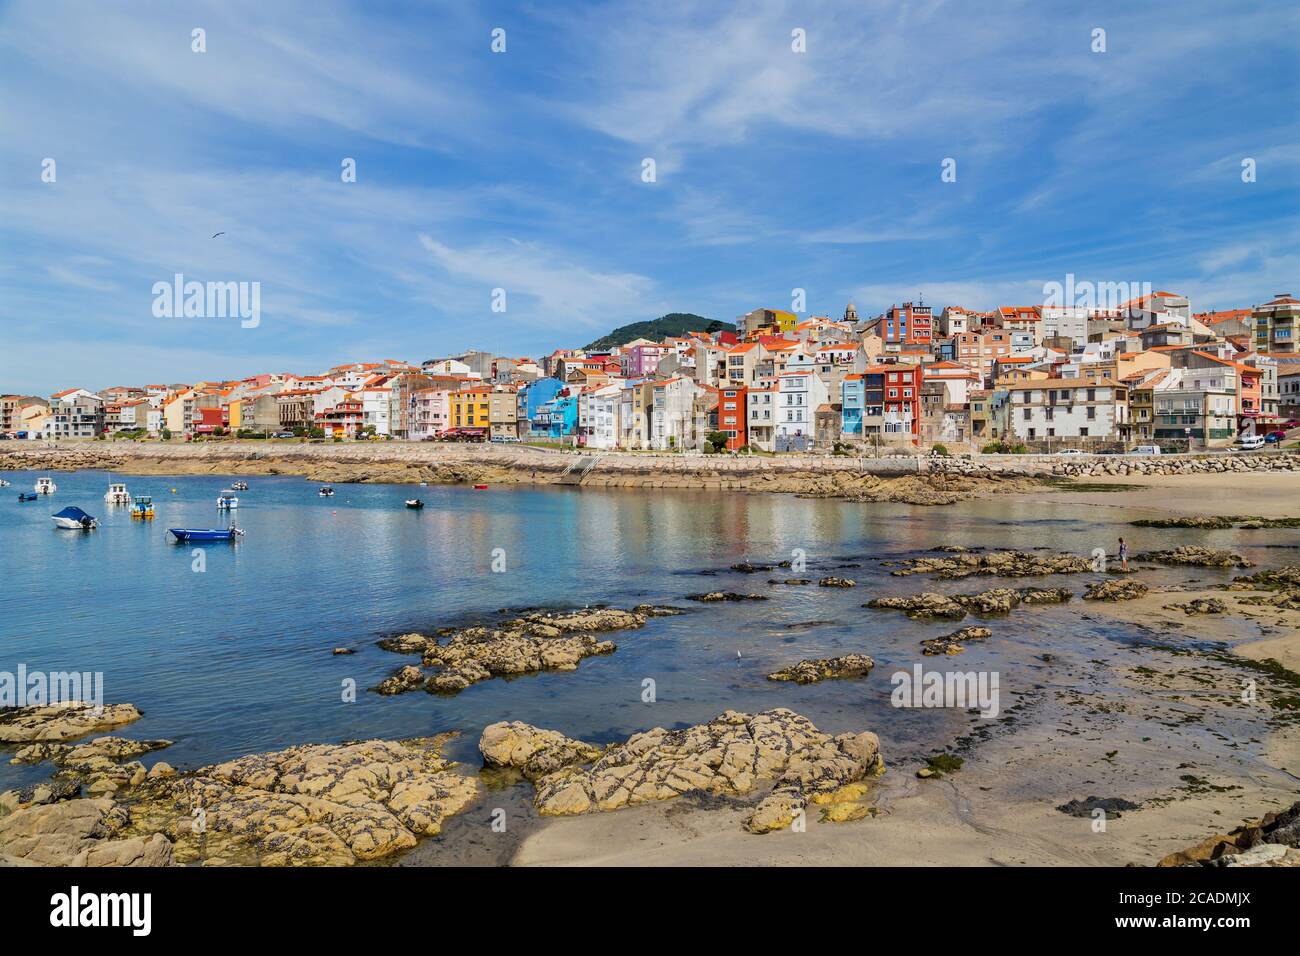 VILA PRAIA DE ANCORA, PORTUGAL - JULY 5, 2020: Port and the city of Vila Praia de Ancora Portugal, Portugal. Stock Photo